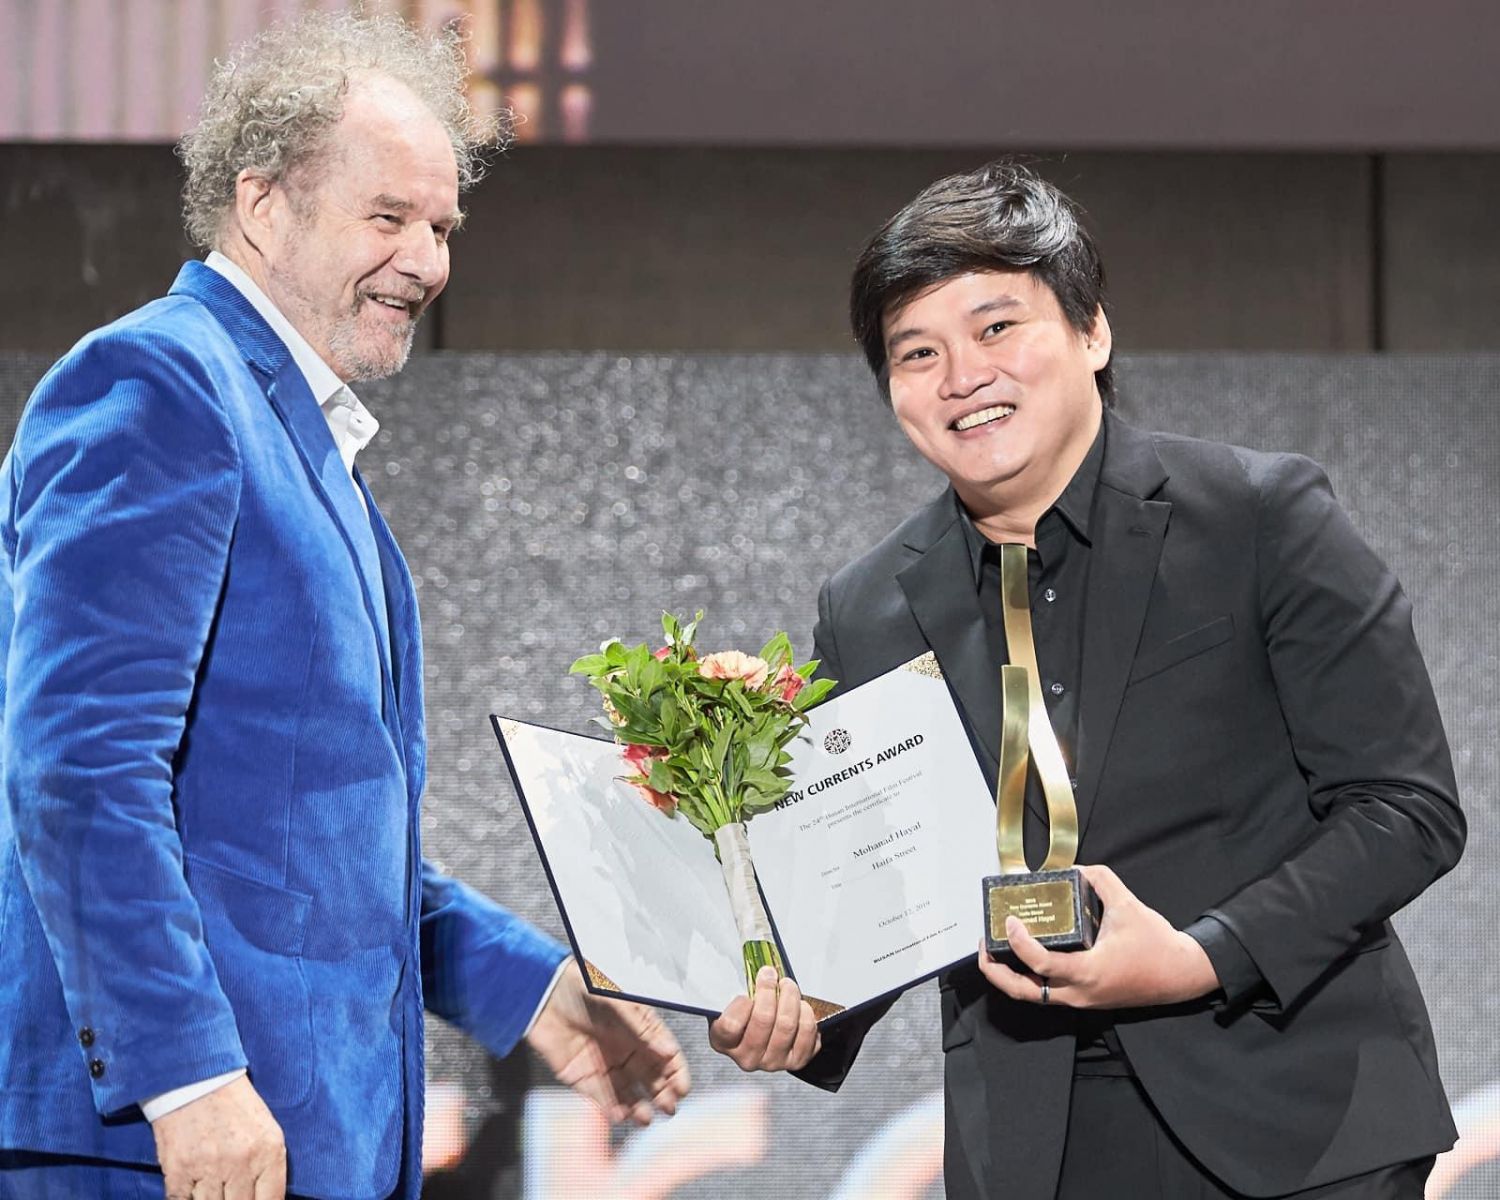 Ròm tạo được hiệu ứng truyền thông nhờ nhận giải ở Liên hoan phim Busan  FBNV